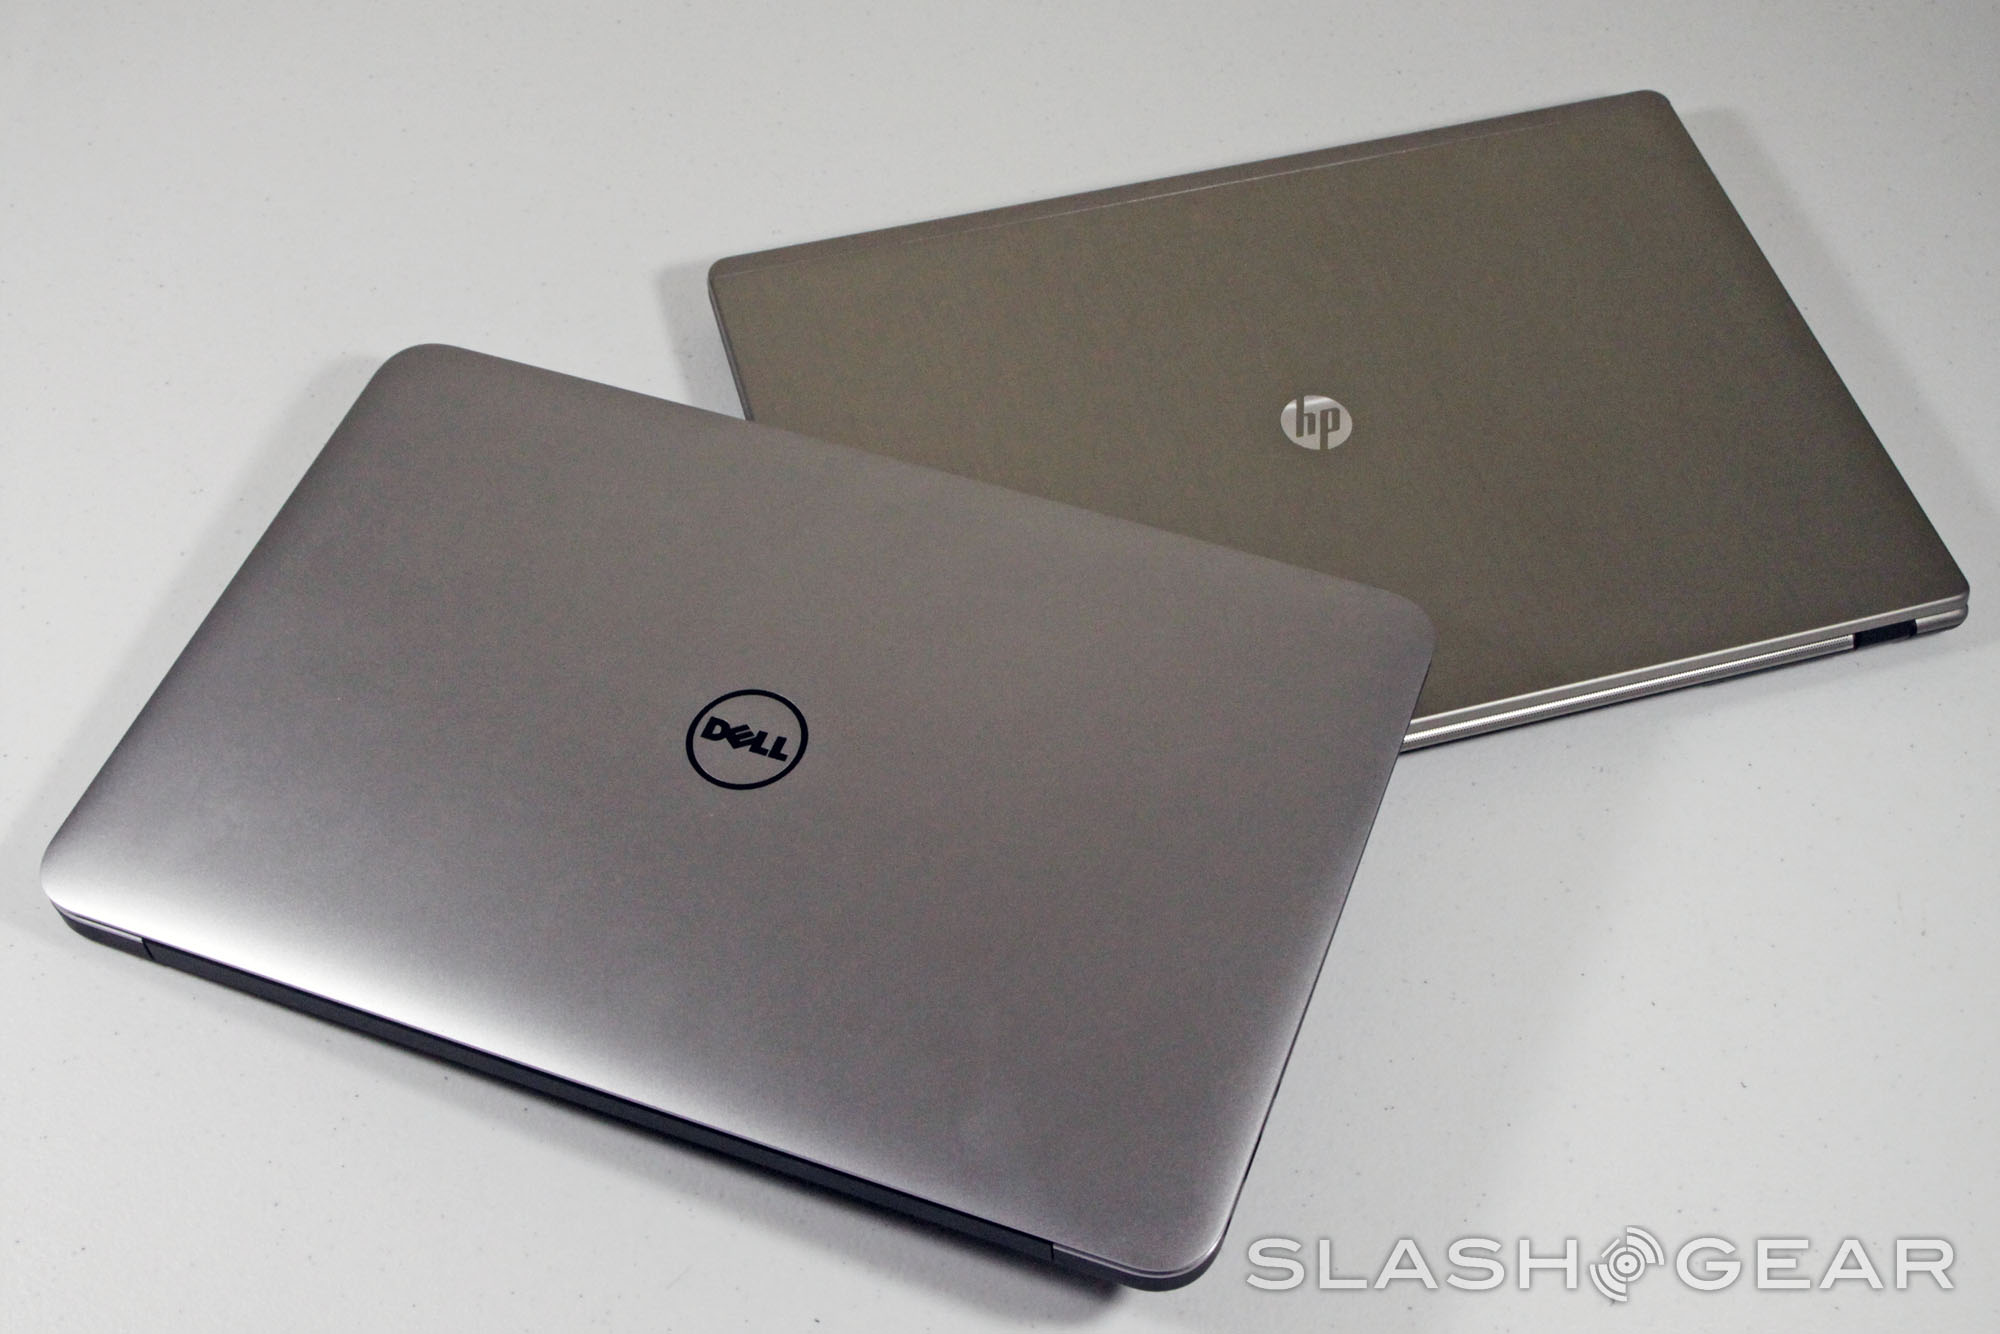 Nên mua laptop Dell hay HP – So sánh, đánh giá ưu nhược điểm từng hãng